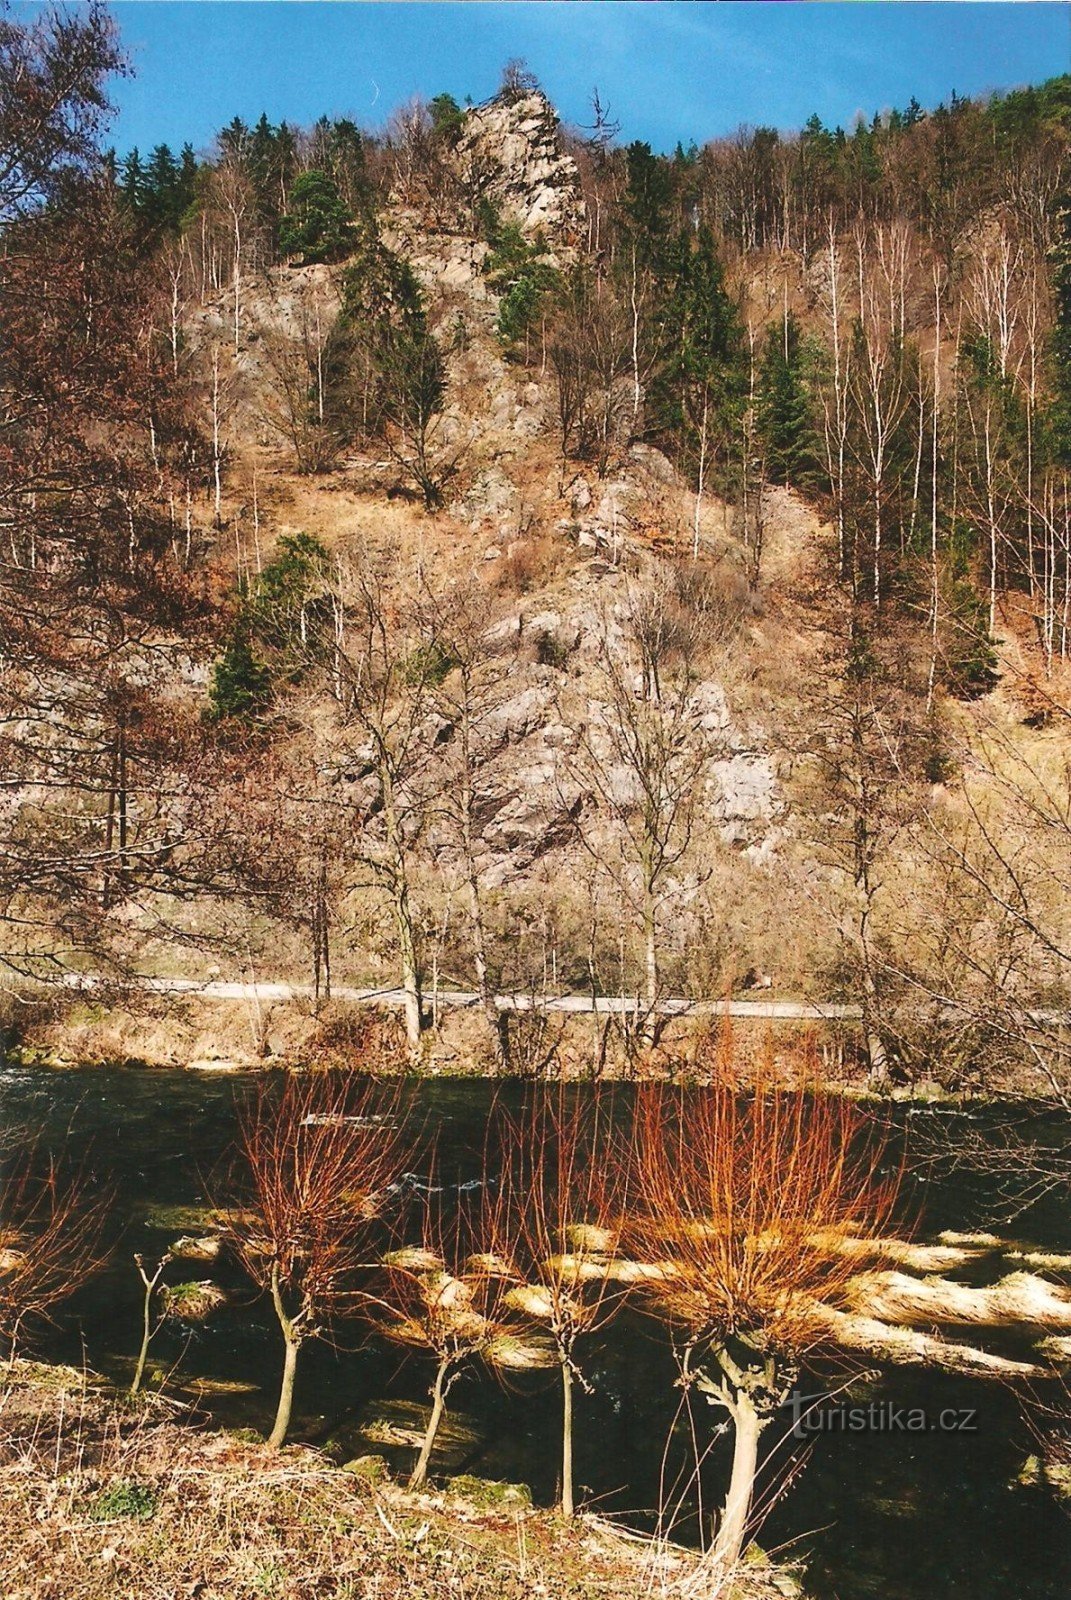 Vírská rock garden - Klubačicen näköalapaikka